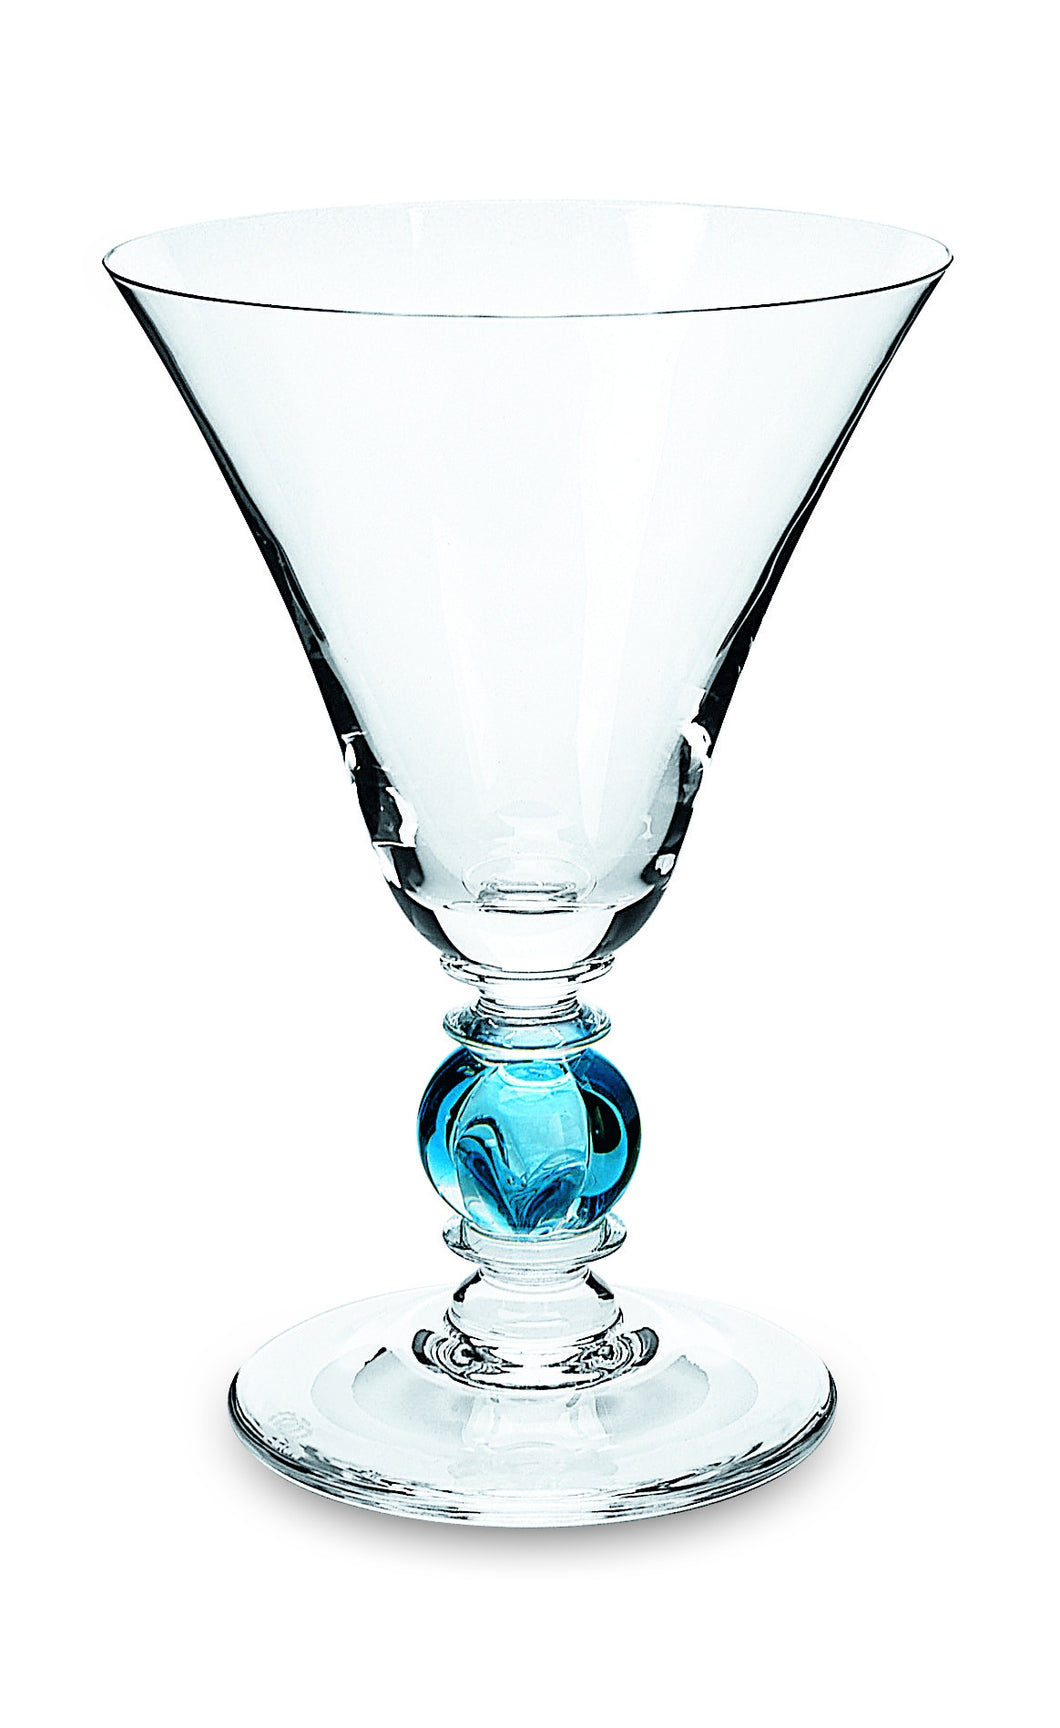 PETERSBURG klar, blaue Hohlkugel - Weinglas 147 mm (Abverkauf)